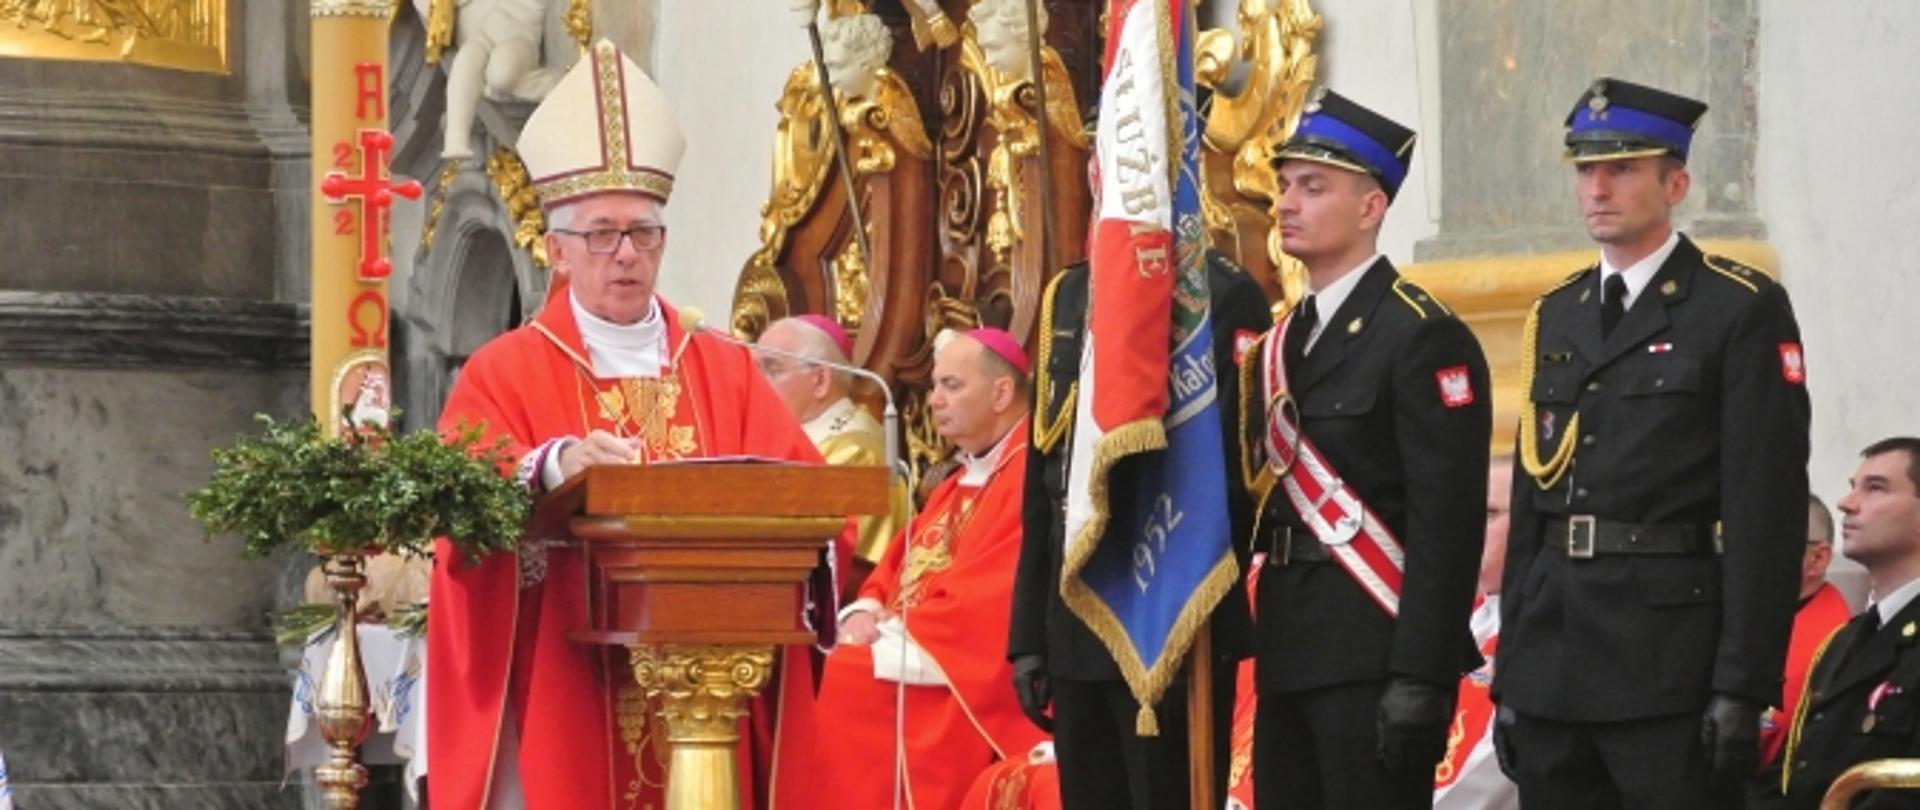 Biskup przemawia podczas mszy stojąc przy mównicy. Po prawej widoczny poczet sztandarowy (trzech strażaków). W tle siedzący księża